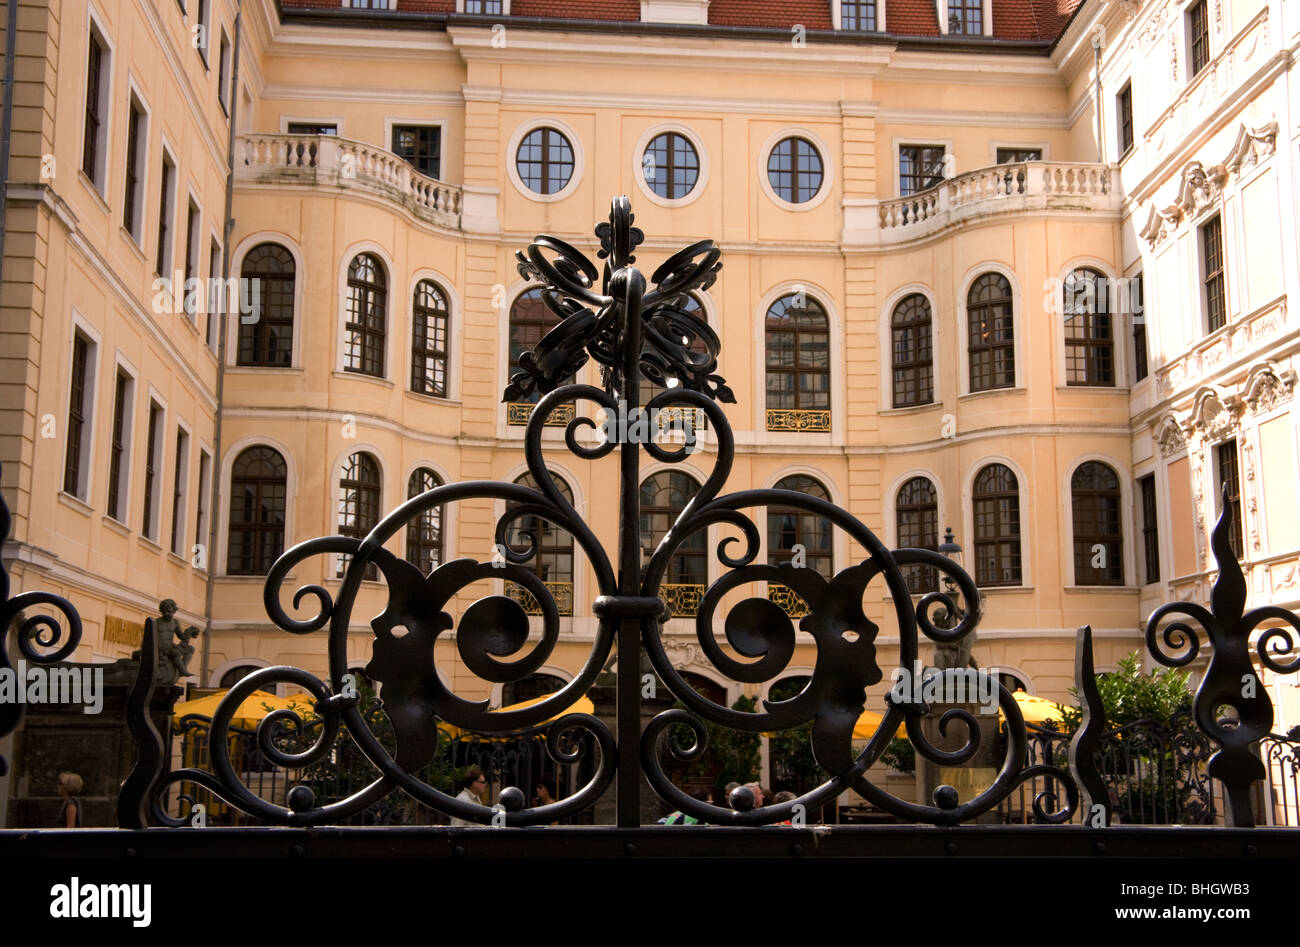 Hierro forjado ornamental sobre una baranda que rodea un edificio en Dresde Foto de stock